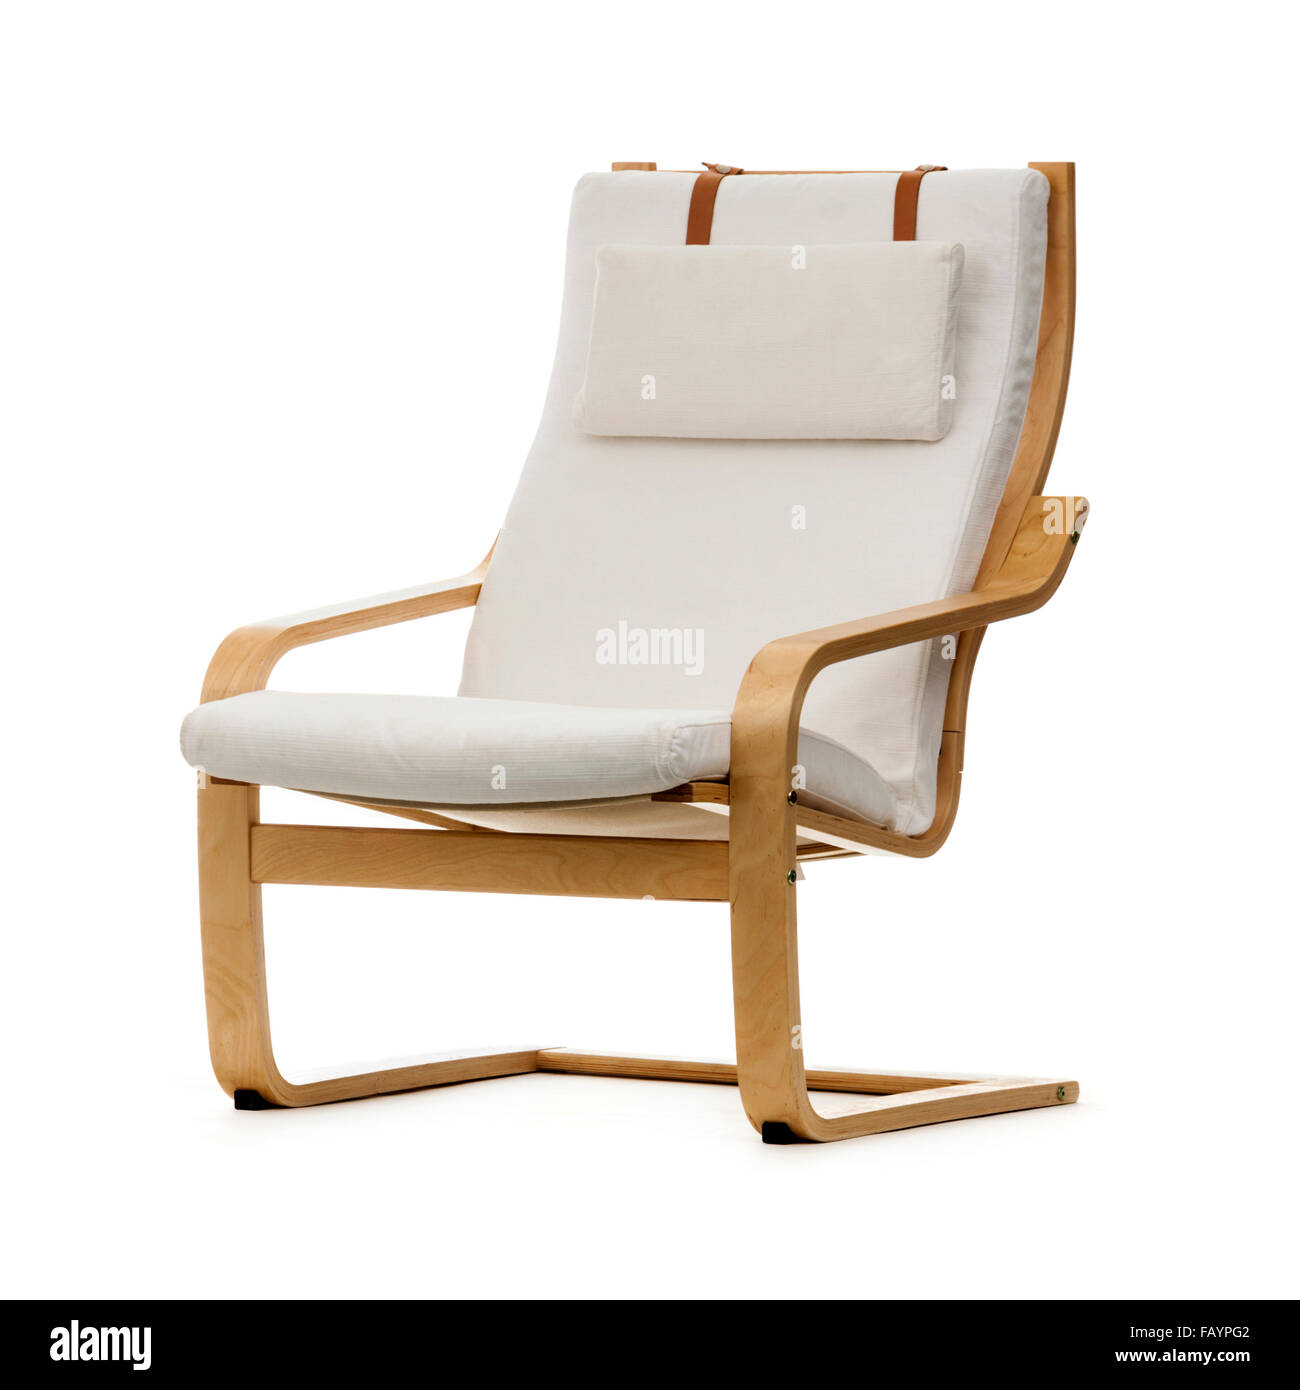 Ikea POÄNG fauteuil, introduit en 1977 comme le poème et renommé en 1992  POÄNG. C'est l'un de ses modèles emblématiques Photo Stock - Alamy